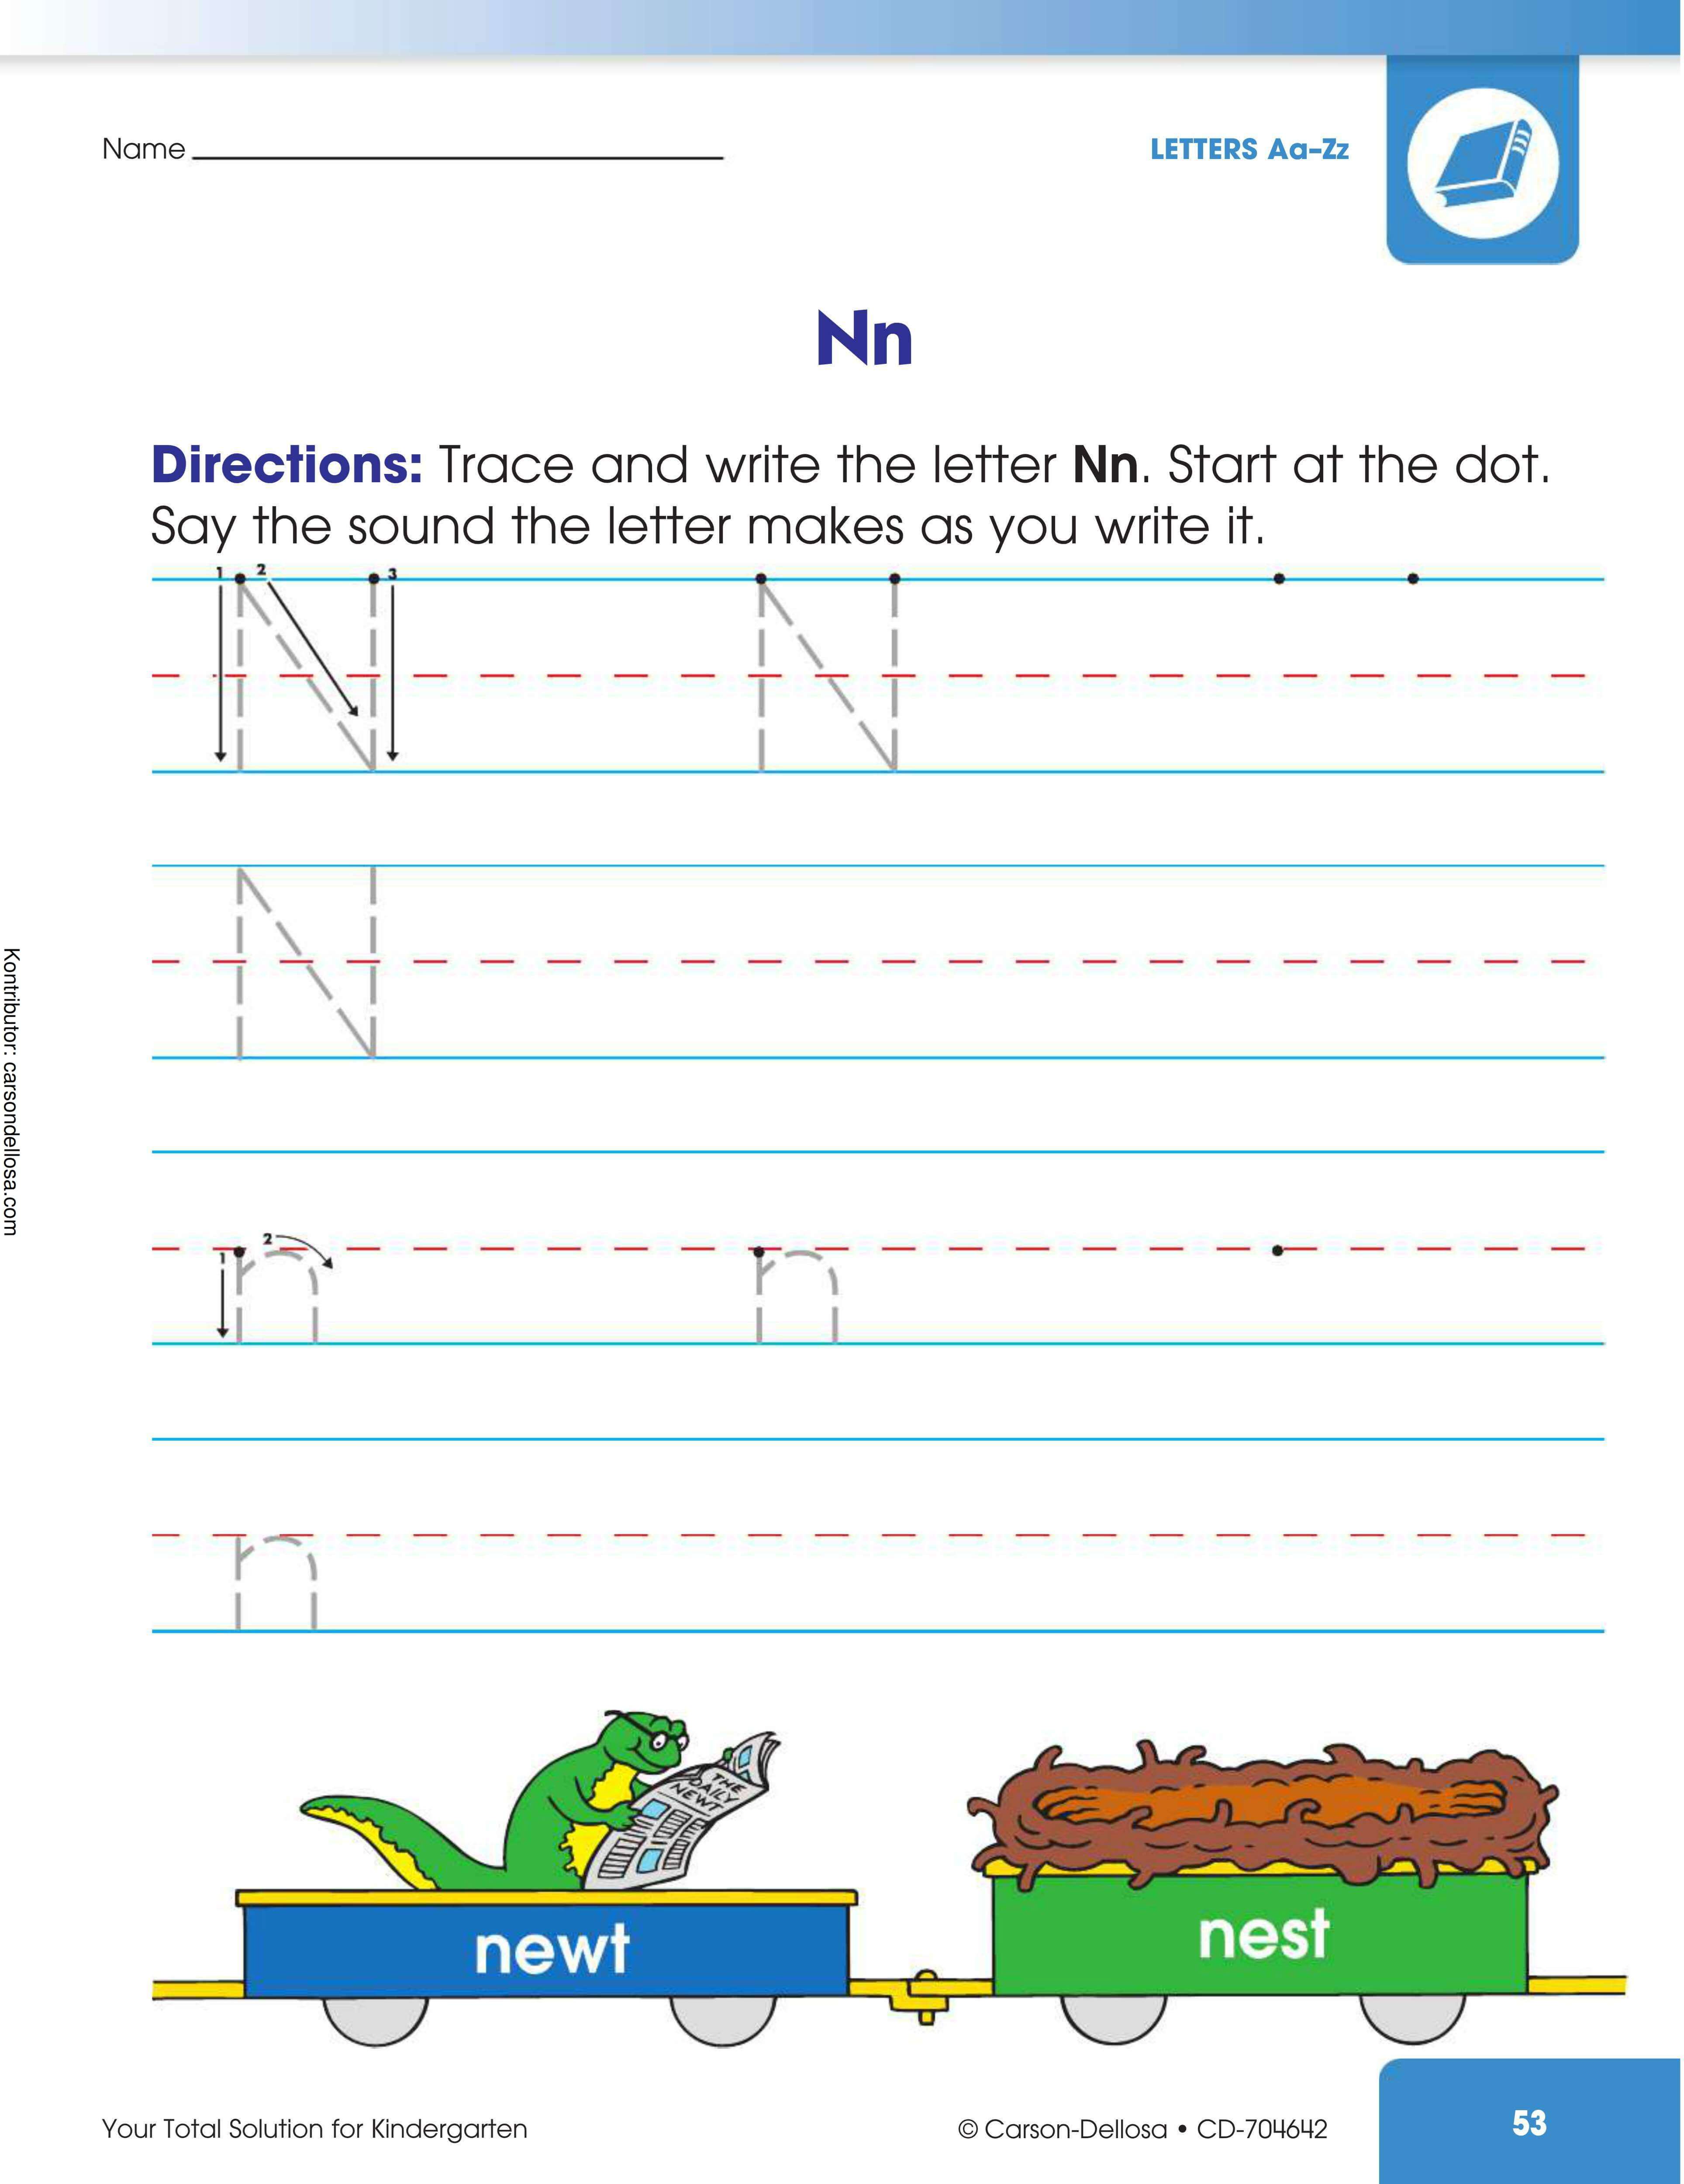 Ebook Your Total Solution for Kindergarten Workbook_054